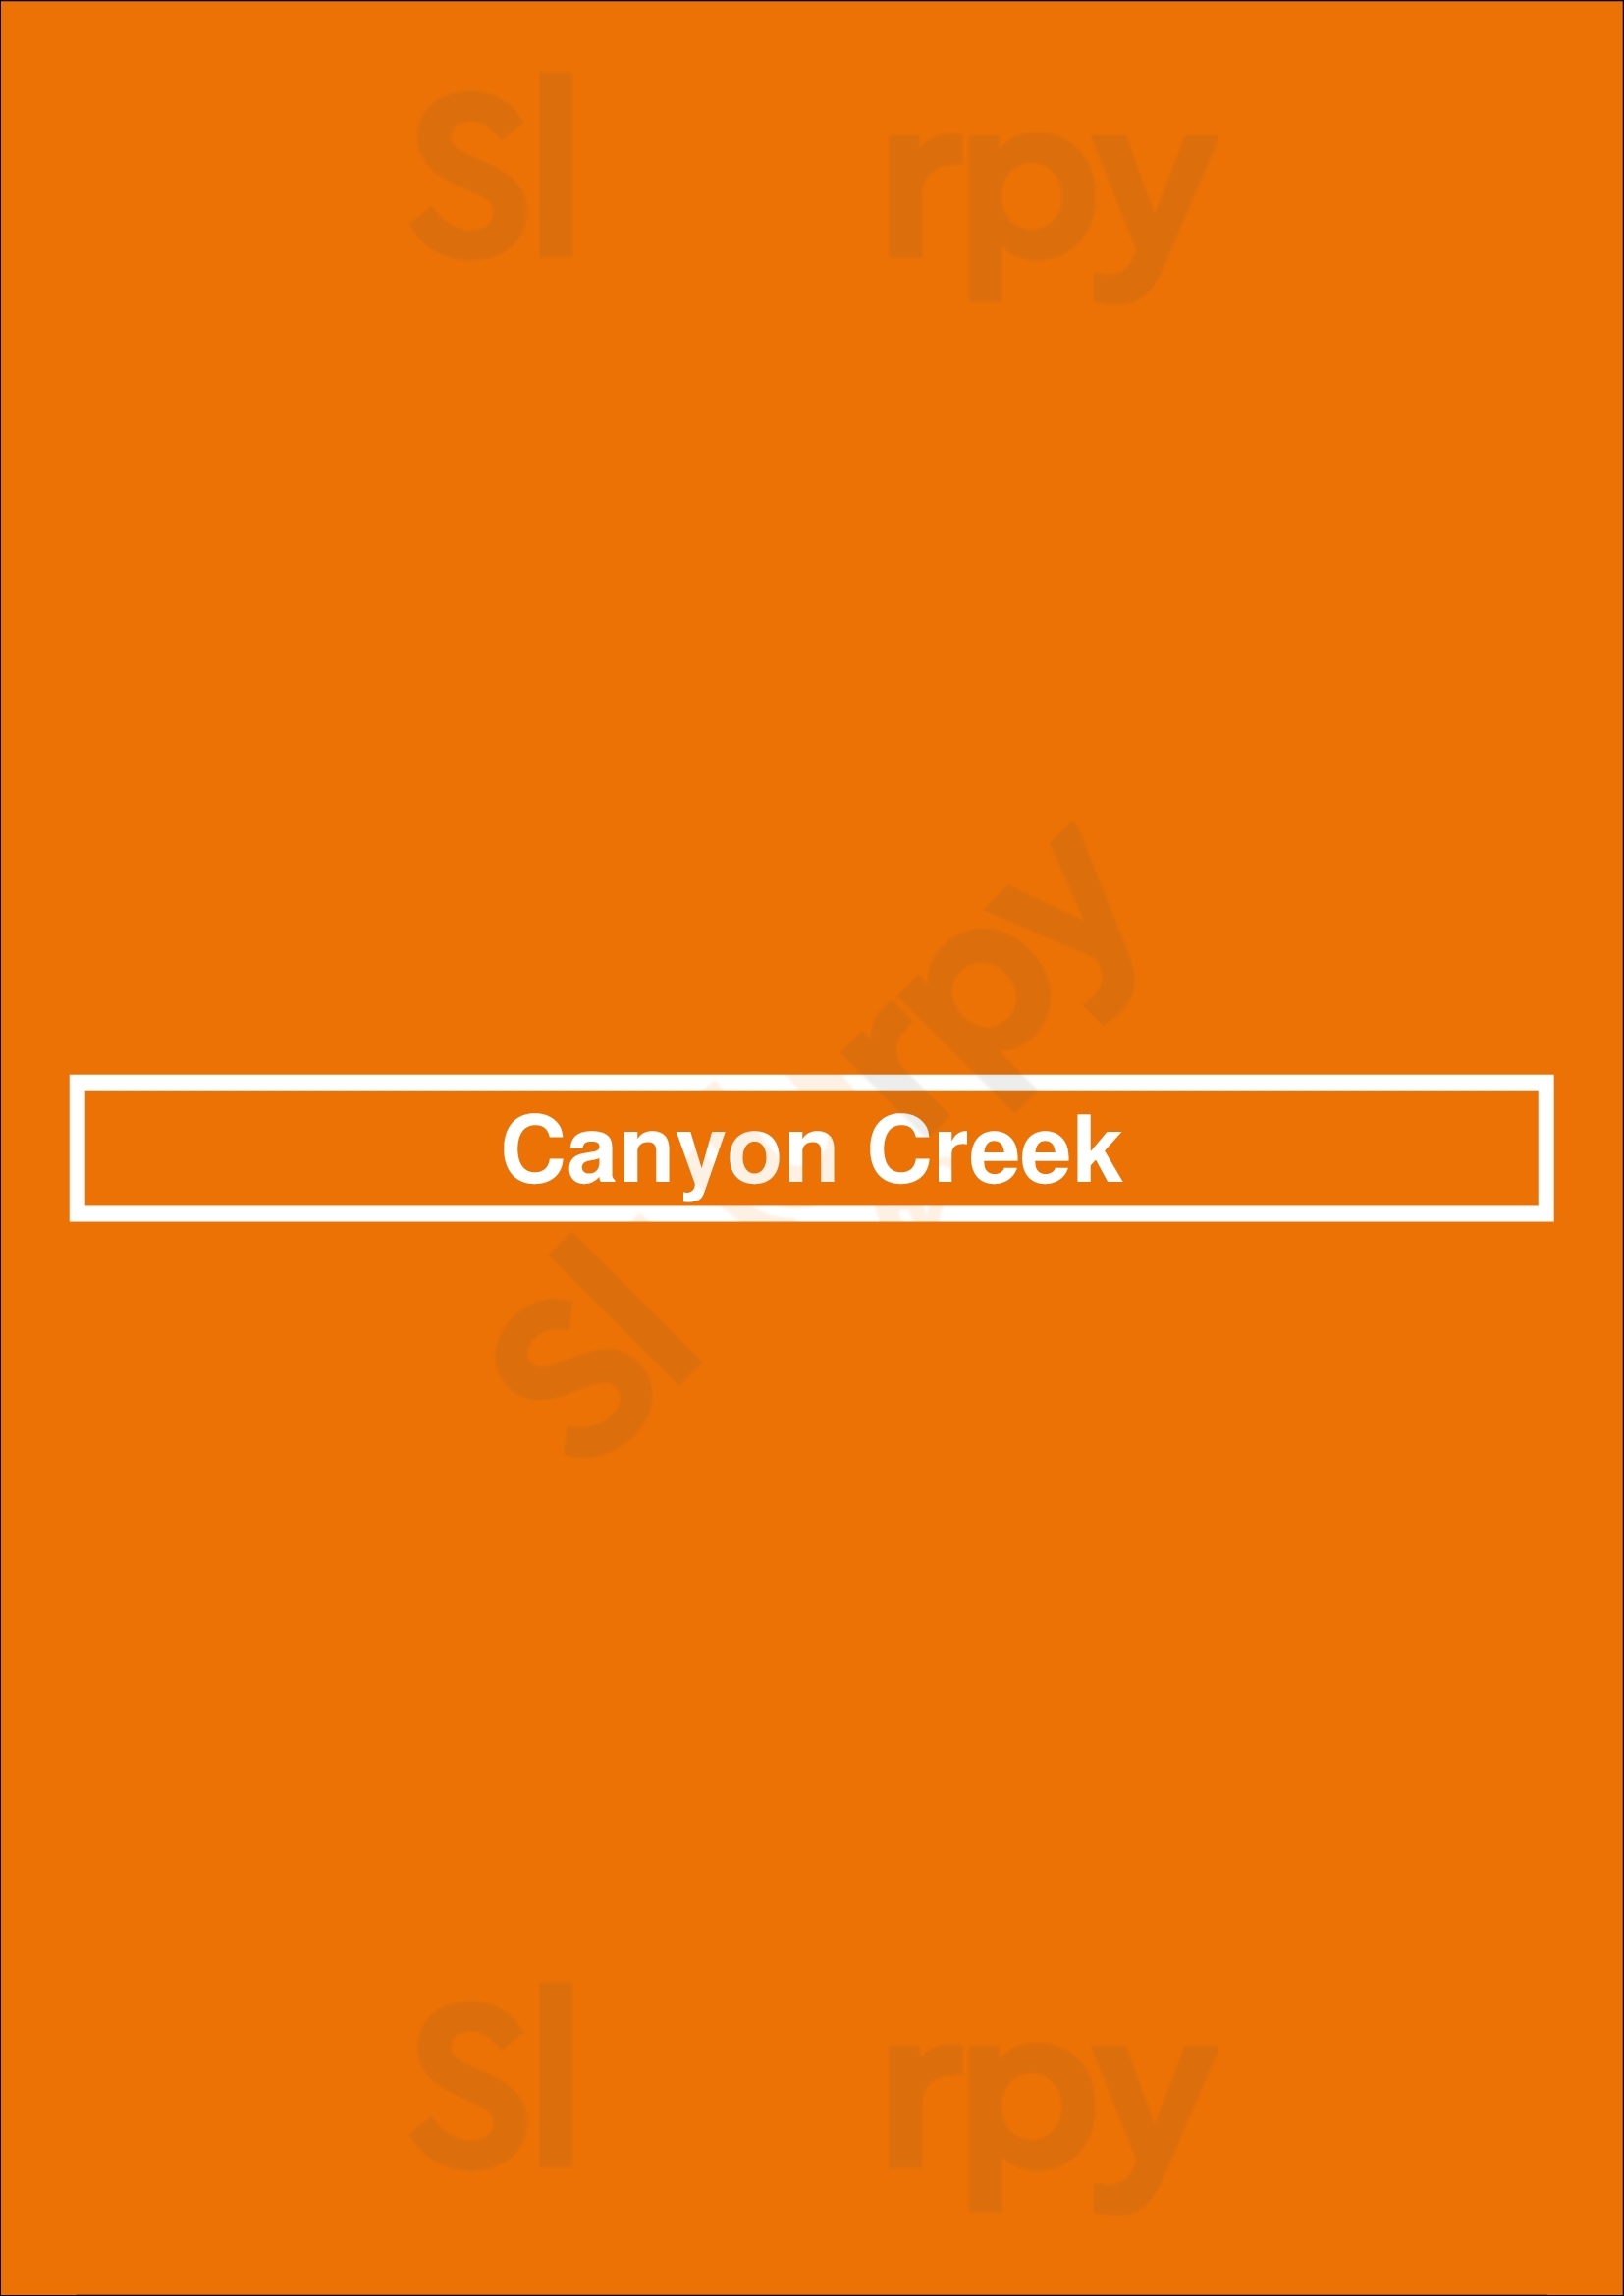 Canyon Creek Mississauga Menu - 1